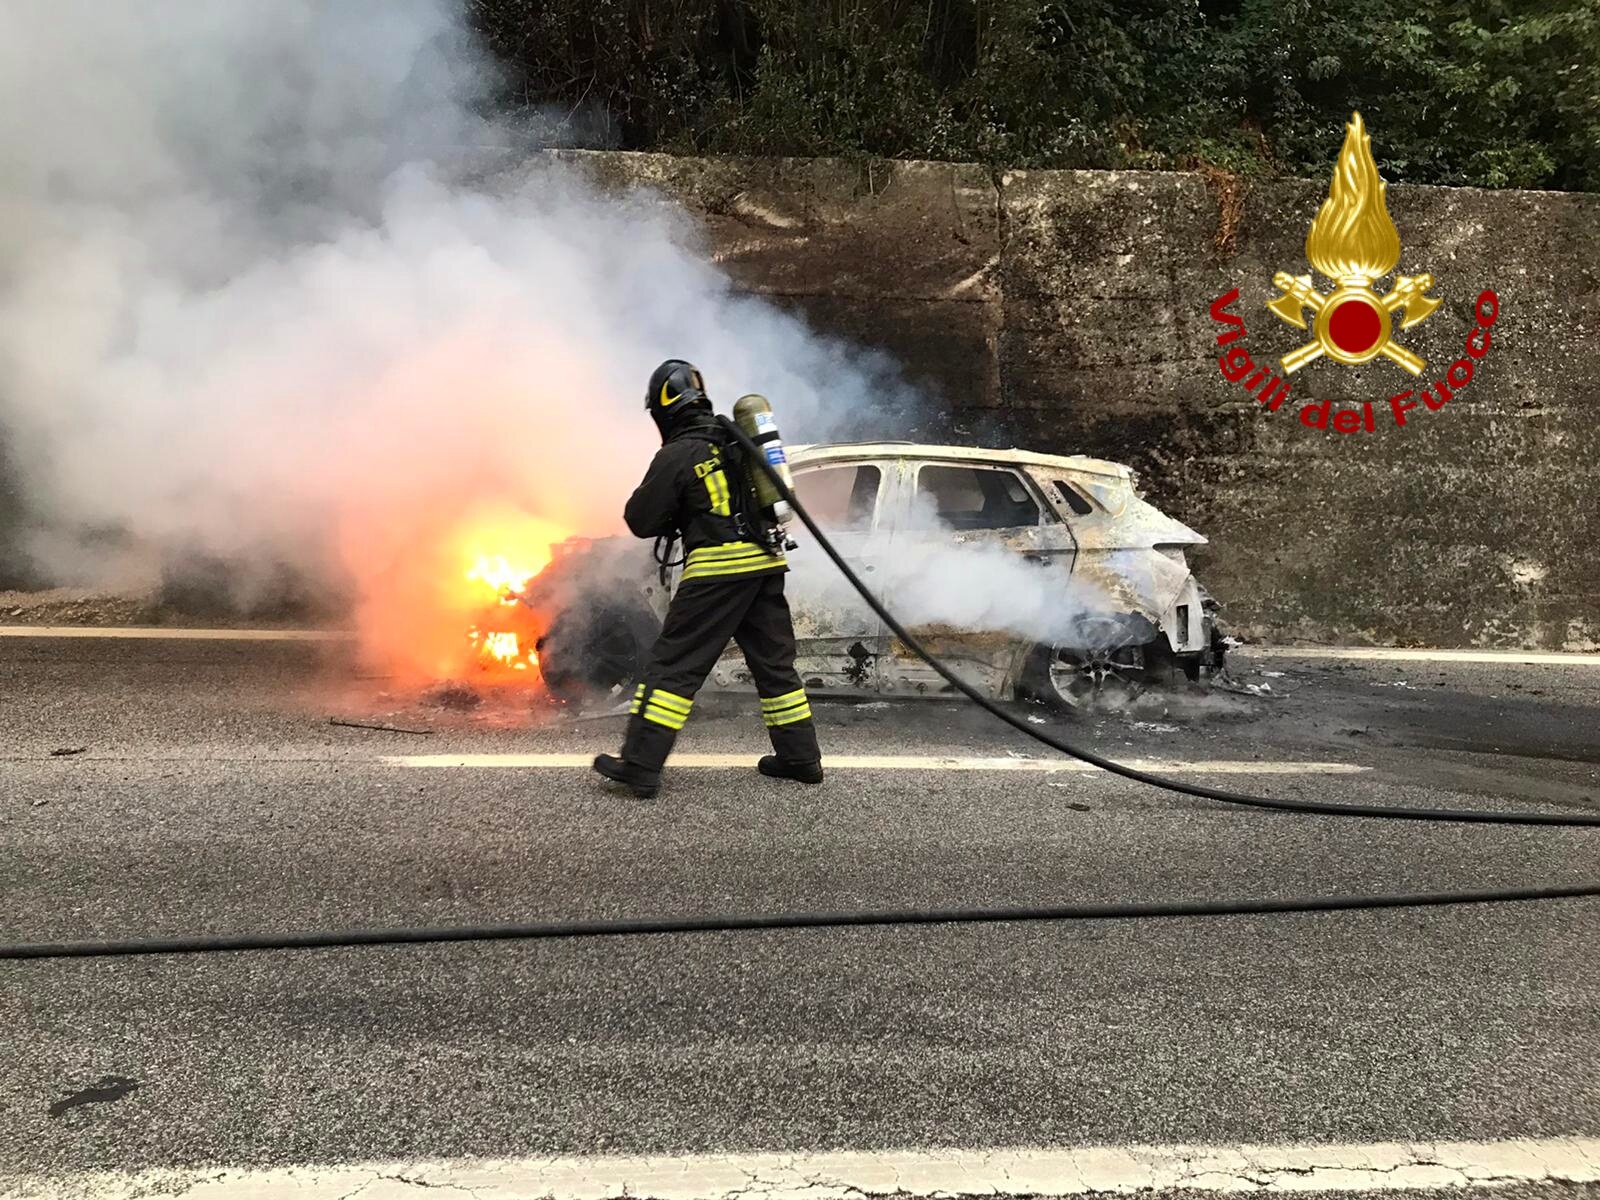 Monteforte Irpino| Auto avvolta delle fiamme lungo l’autostrada, spavento per le due persone a bordo